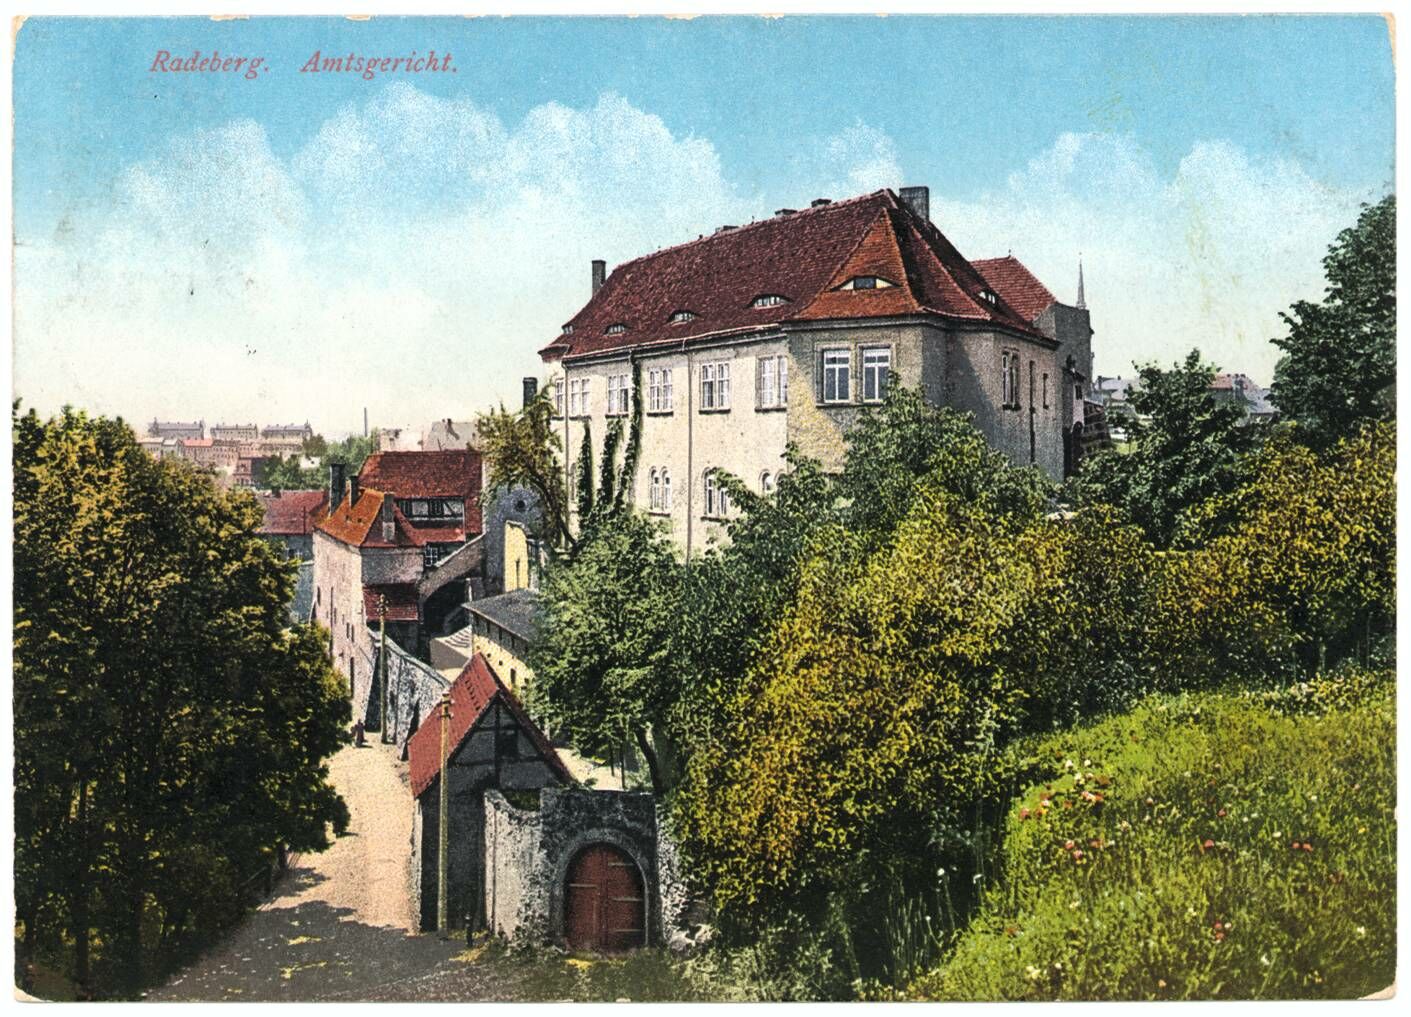 Blick auf den hinteren Schlosseingang, die Hauptburg, die Schlossmauer und den Weg, der an der Schlossmauer entlang führt. Es handelt sich um eine kolorierte Postkarte von 1915.